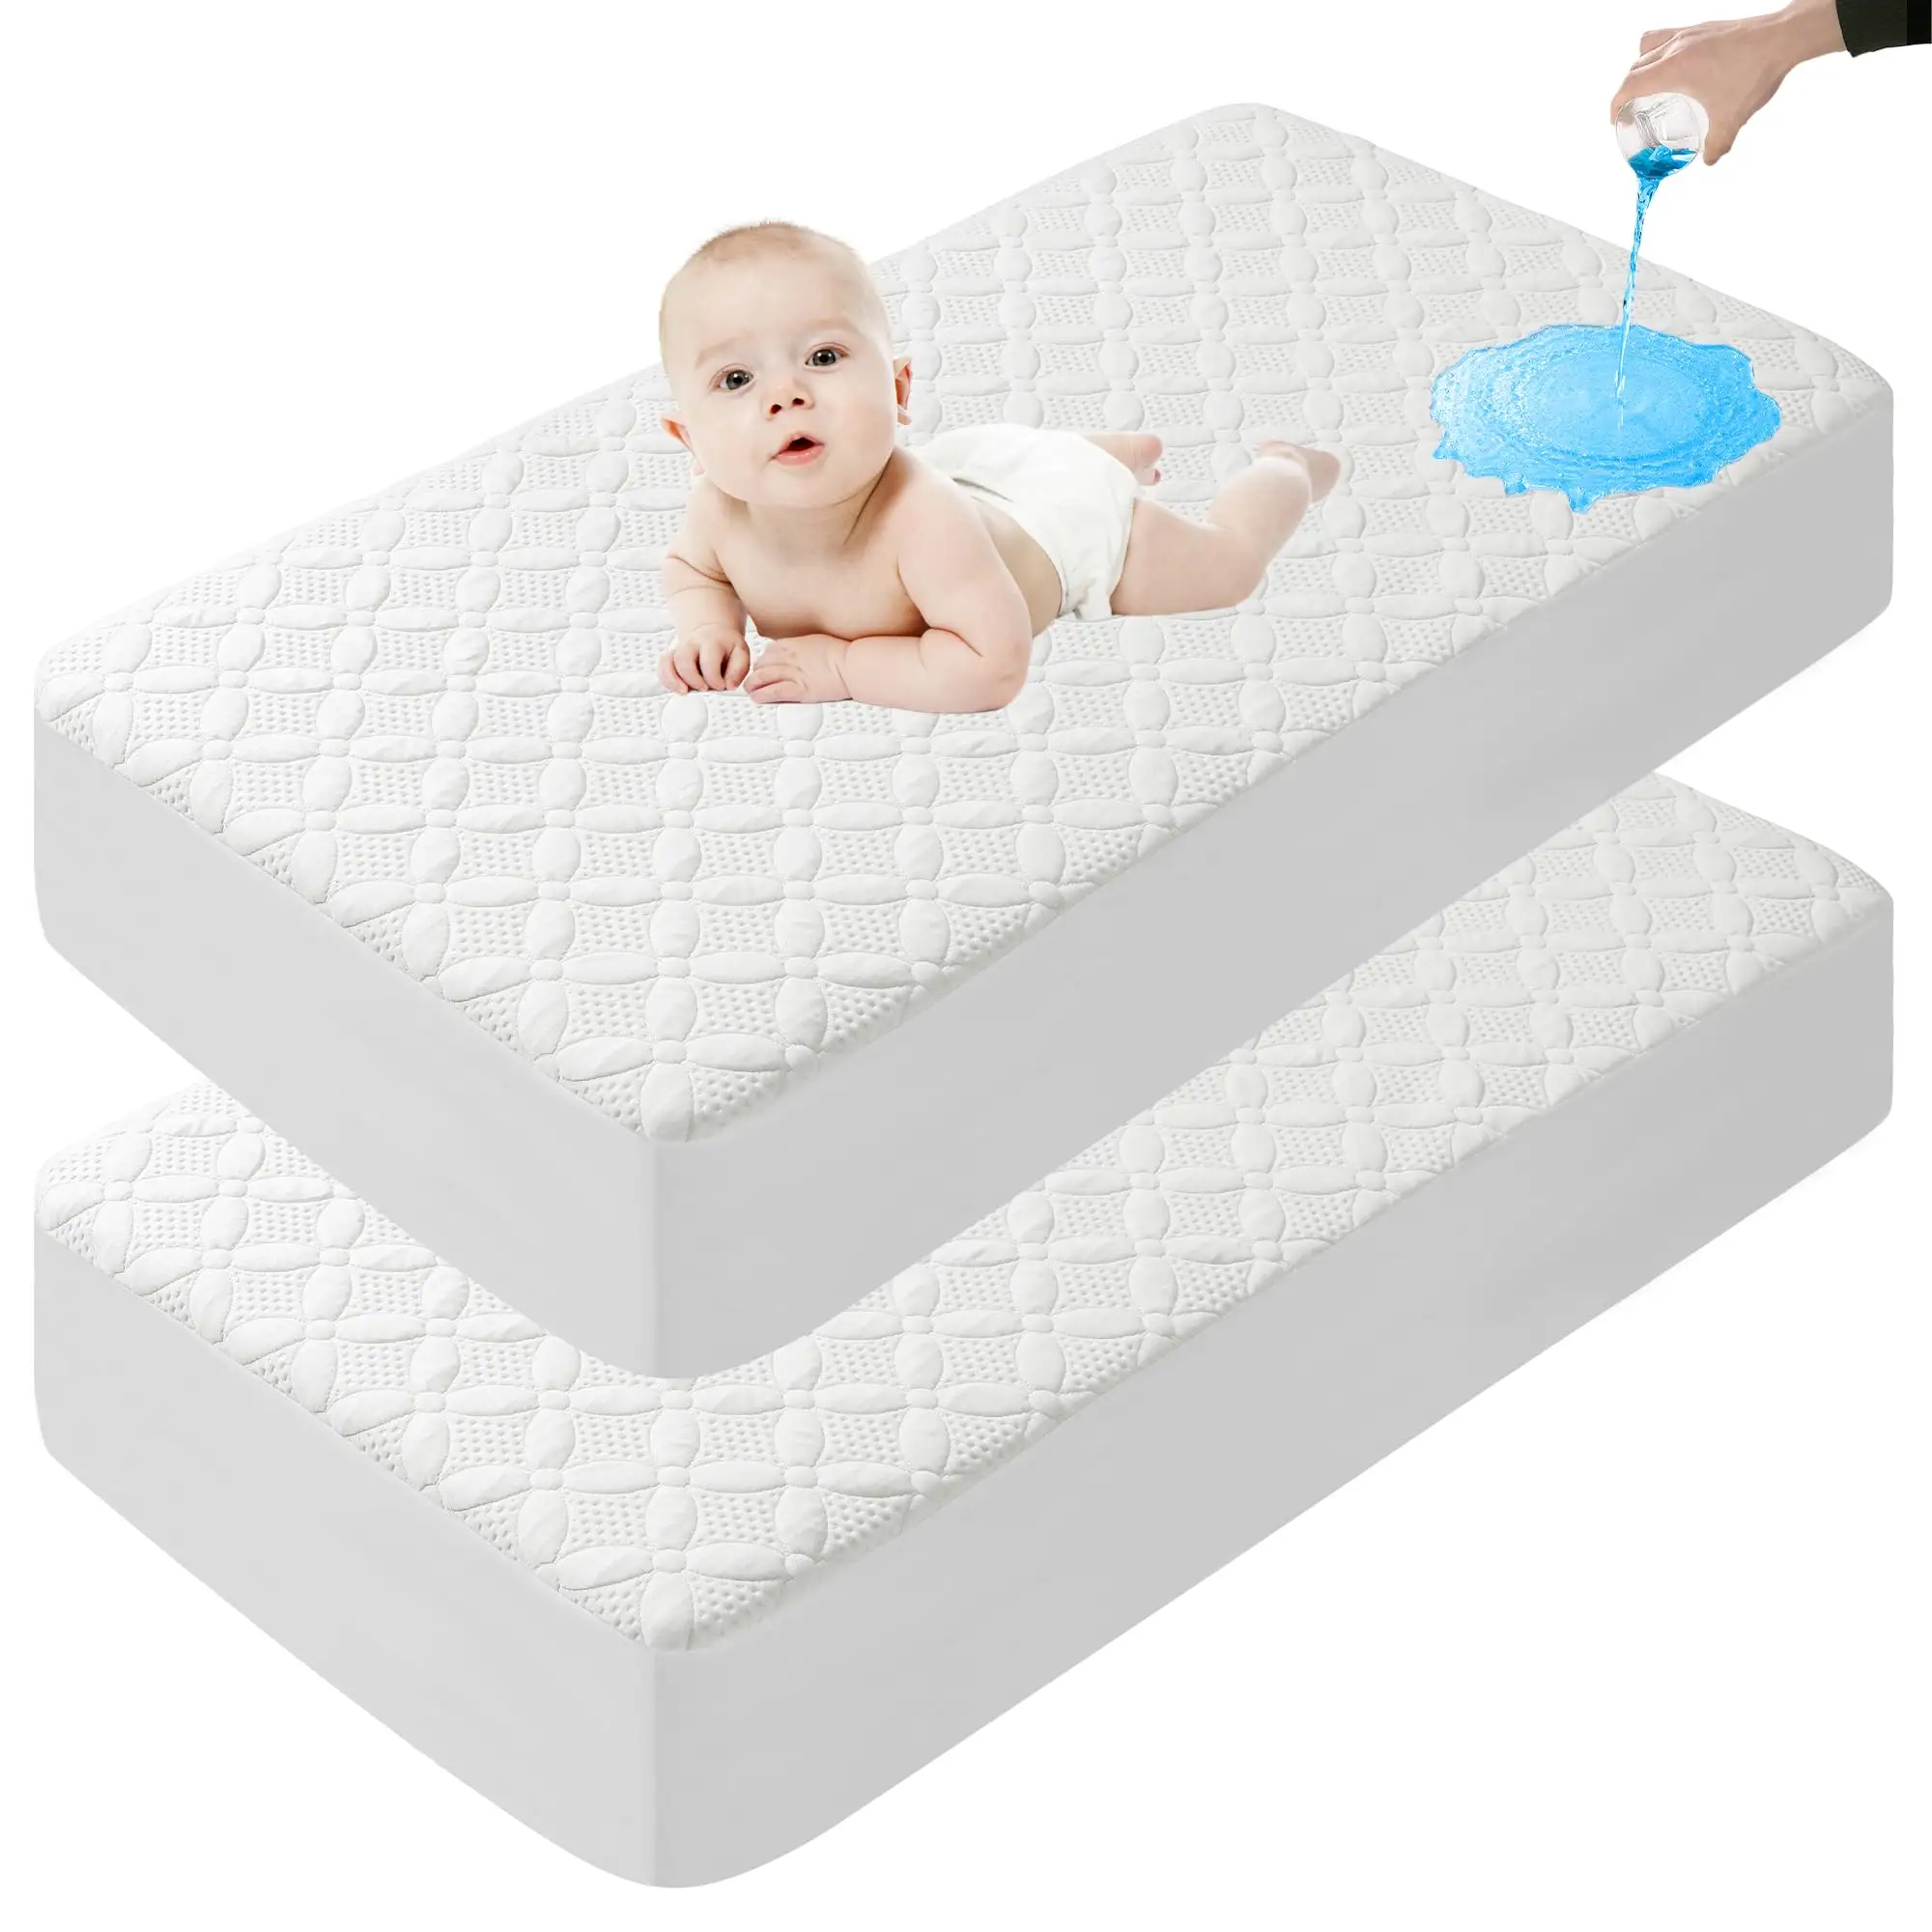 Cooling Baby Crib Mattress Protector Toddler Bamboo Viscose Washable Waterproof Crib Mattress Pad Cover